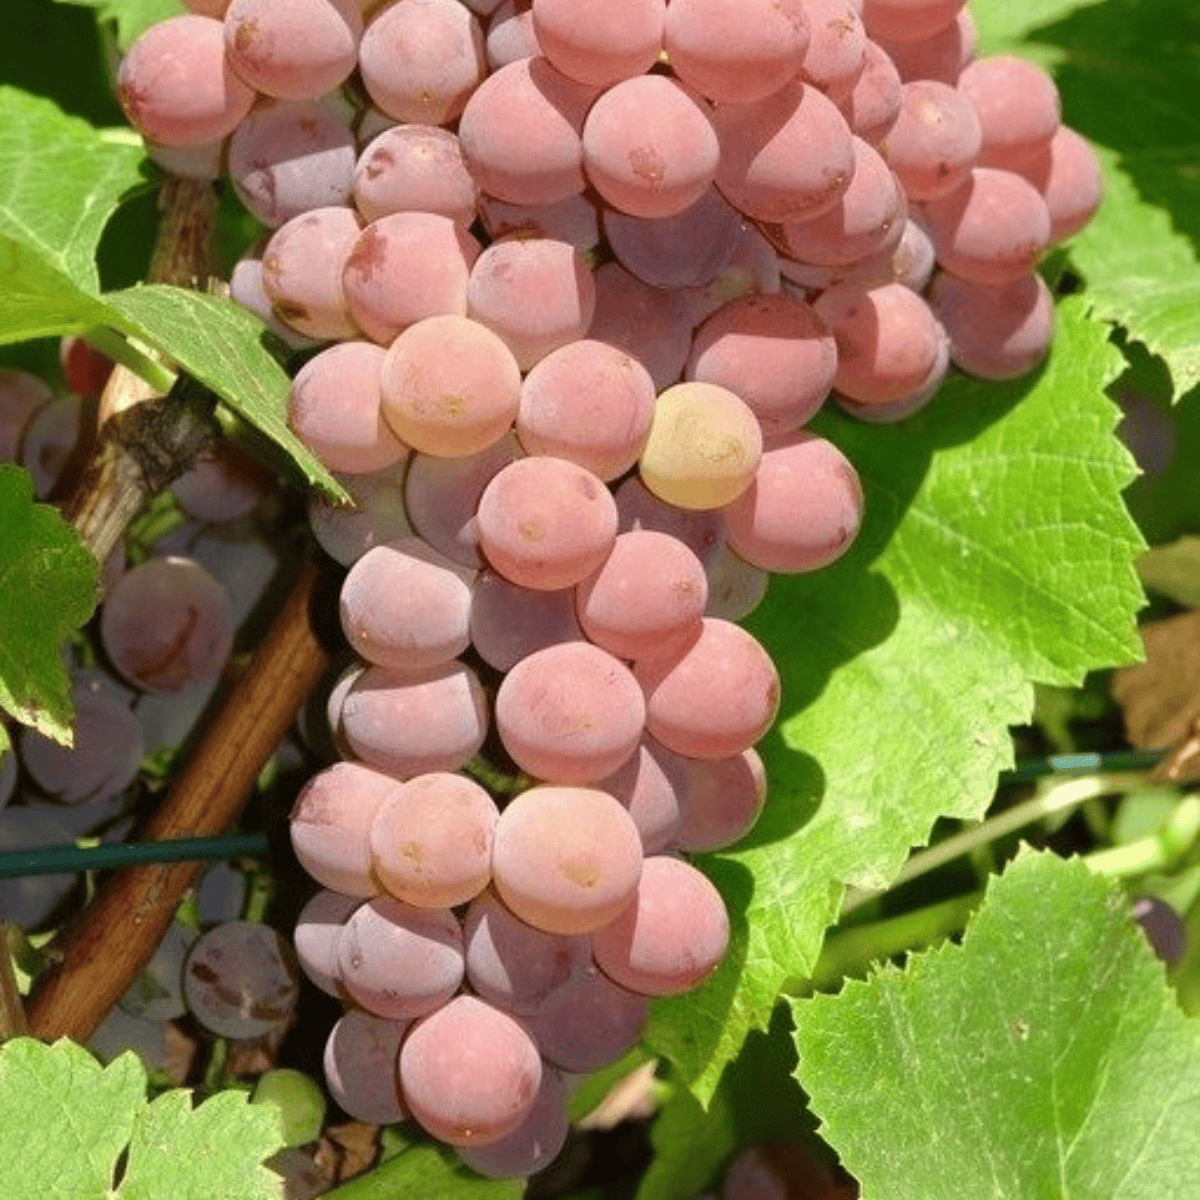 Winorośl winogrona Einset Seedless bezpestkowa